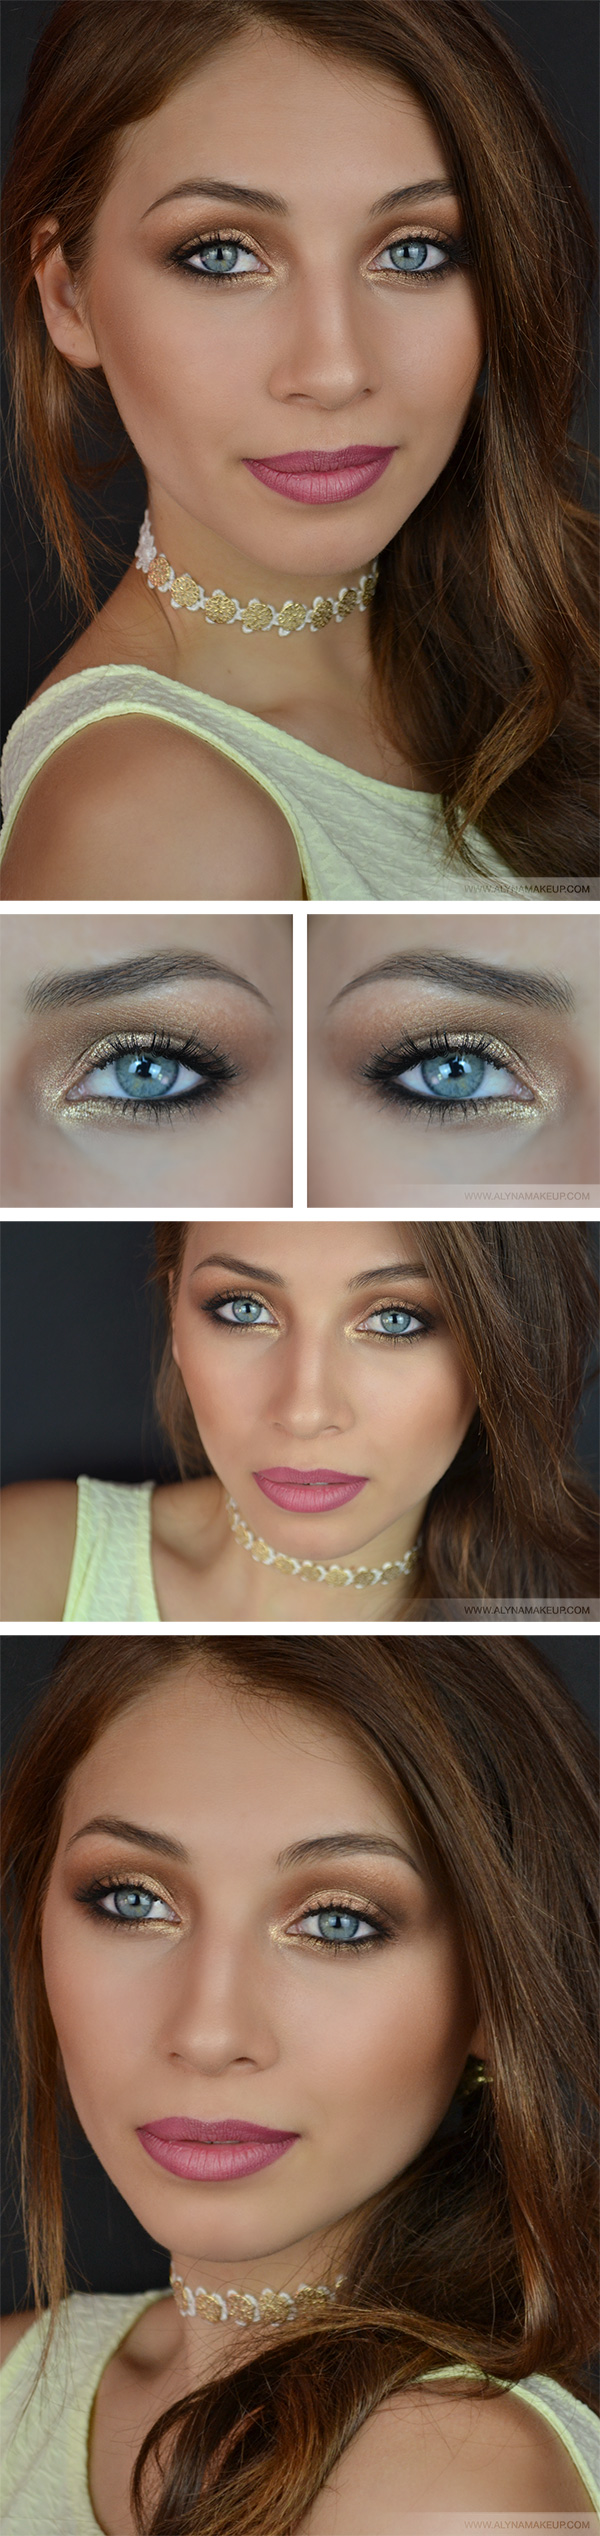 bronze-makeup-look-600